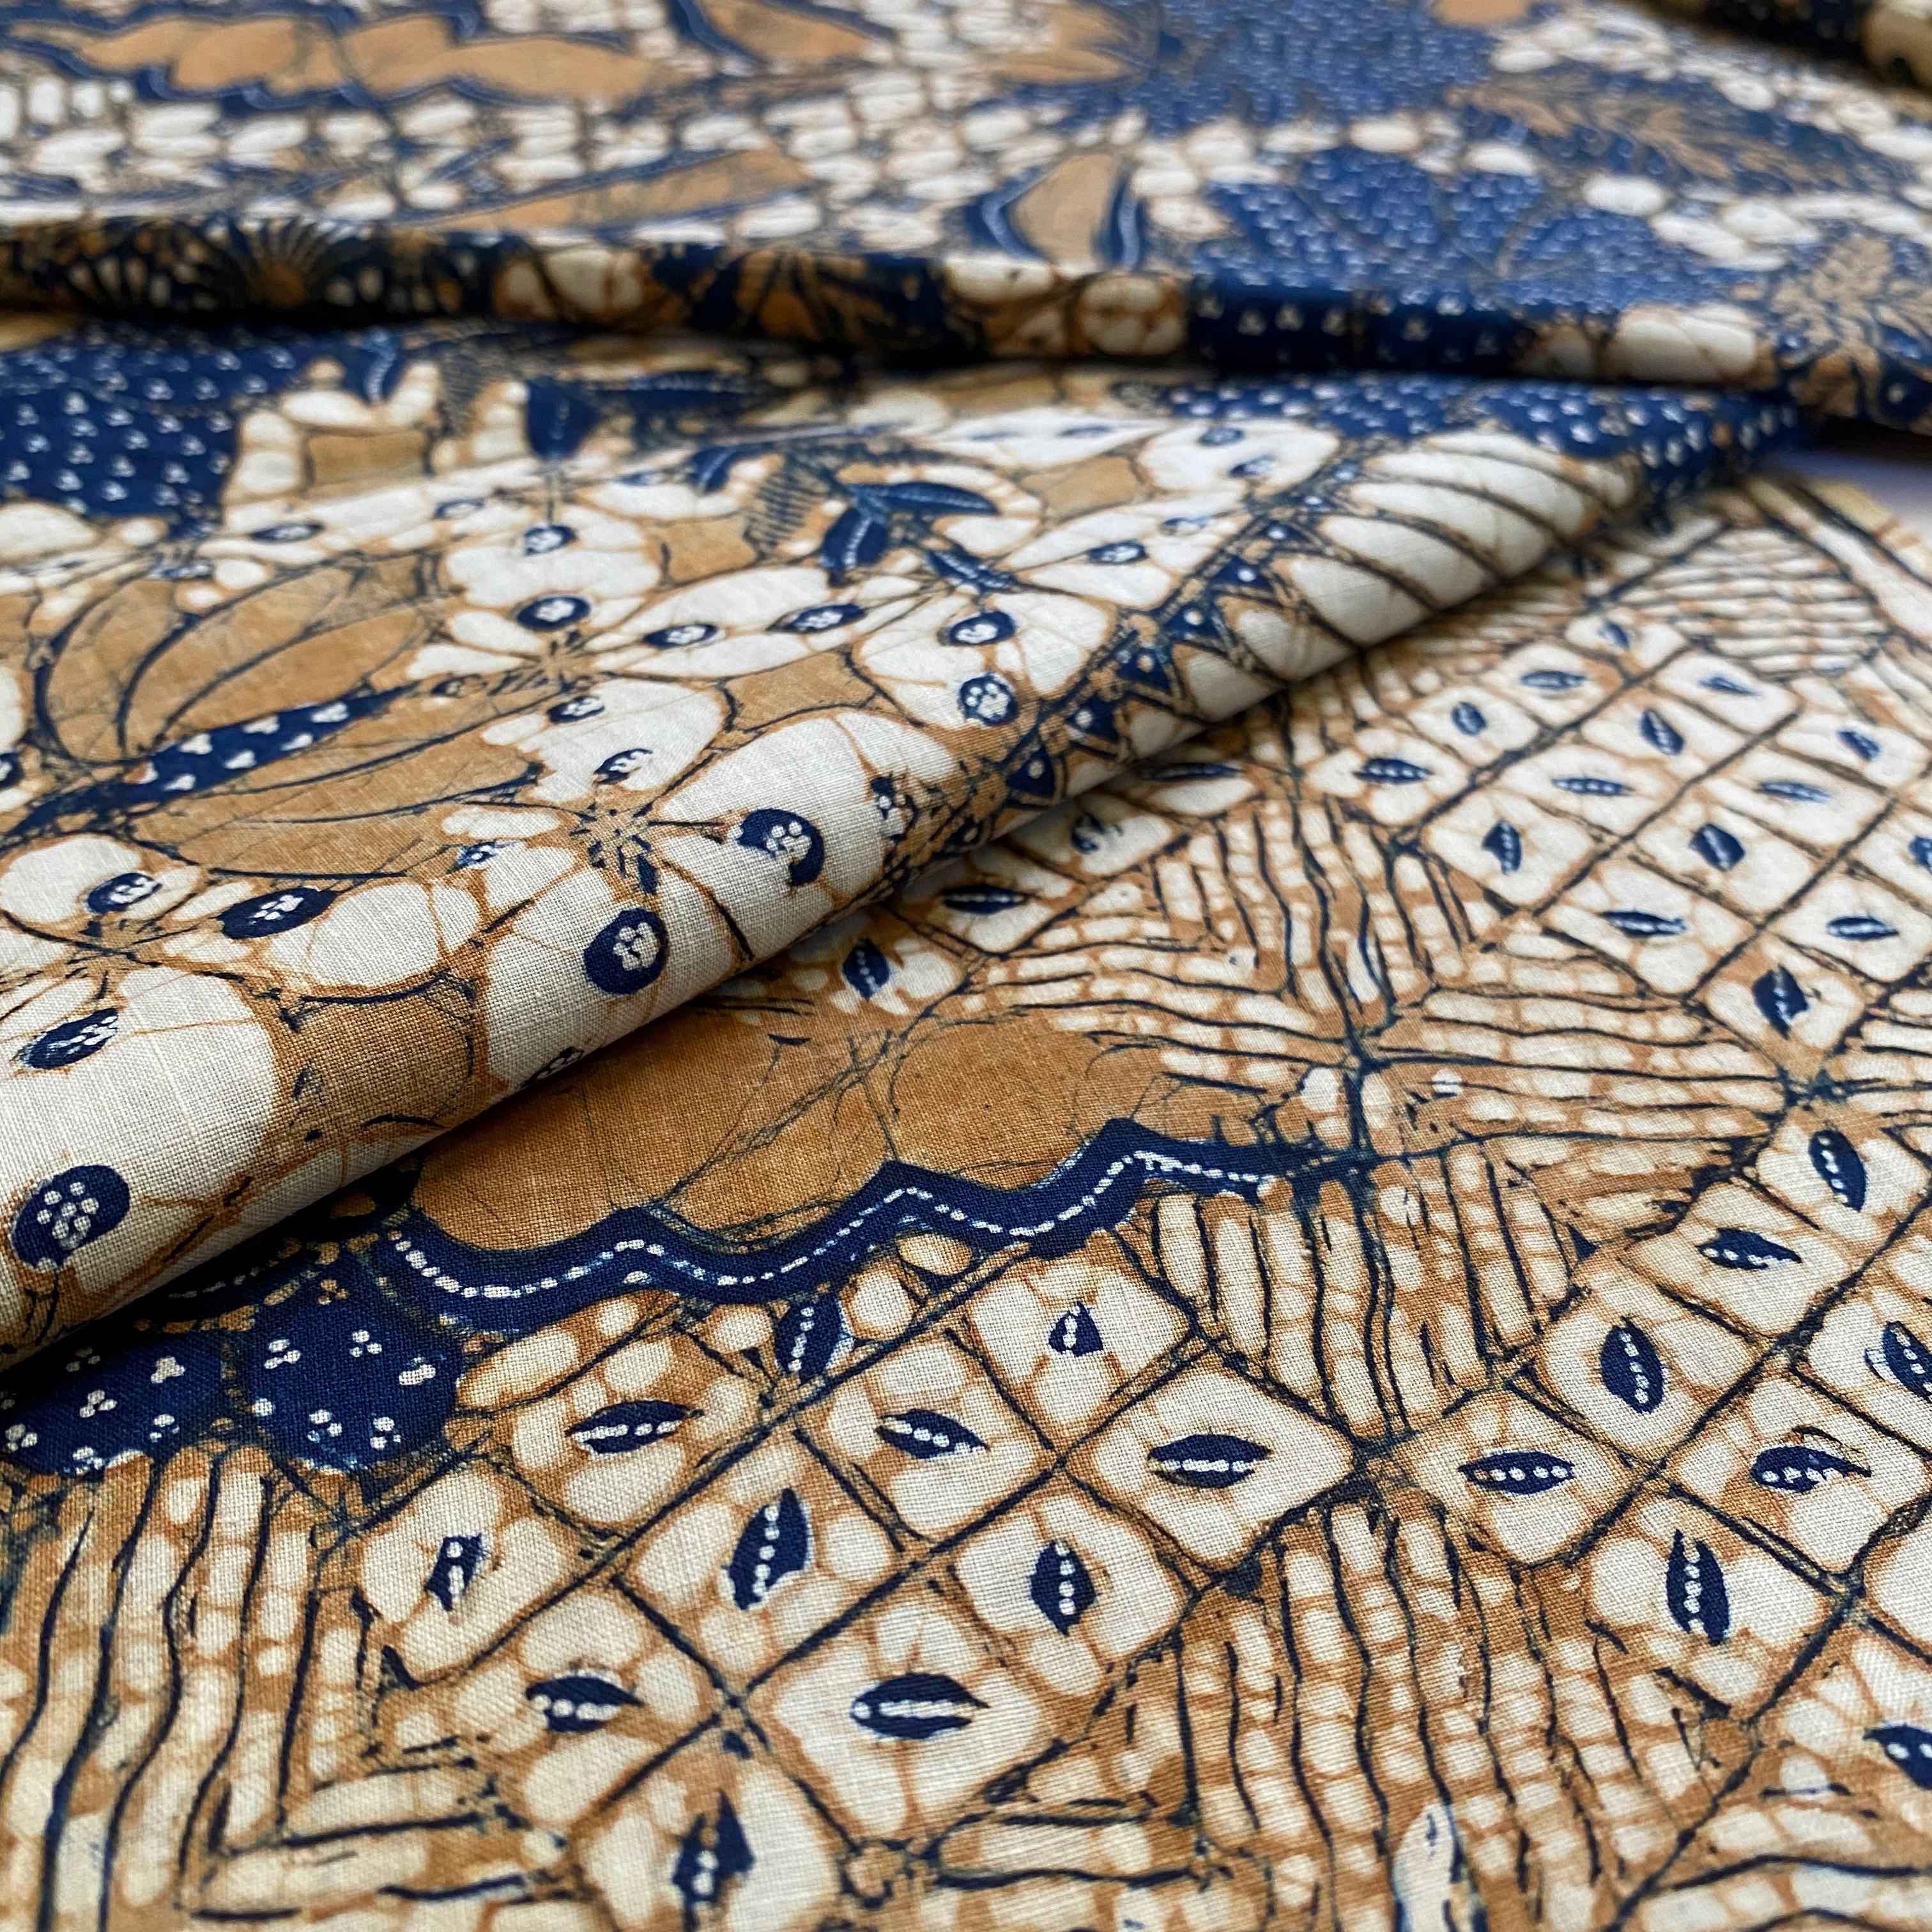 Japanese Mid-20th Century Batik, Kain, Hip-Wrap Clothing Garment, Java